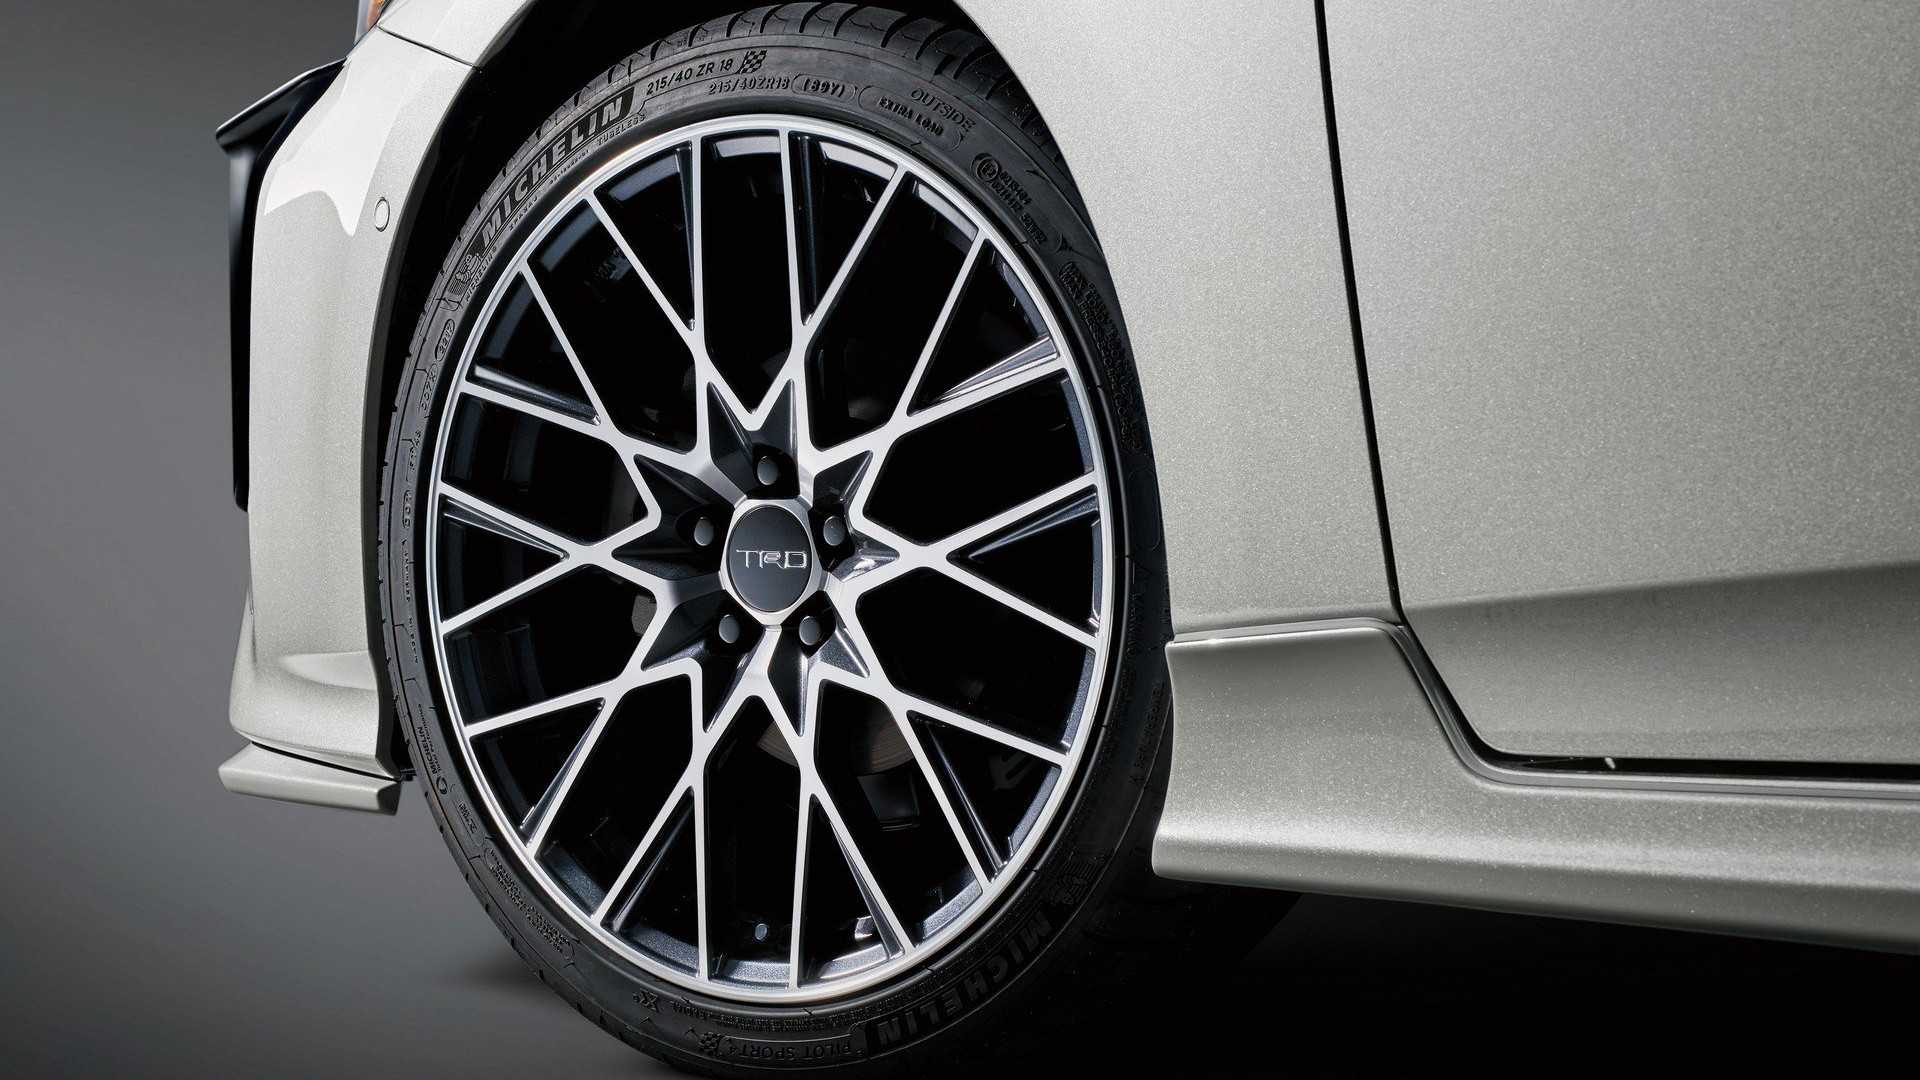 丰田TRD赛车开发公司对2019款丰田普锐斯进行运动型改装